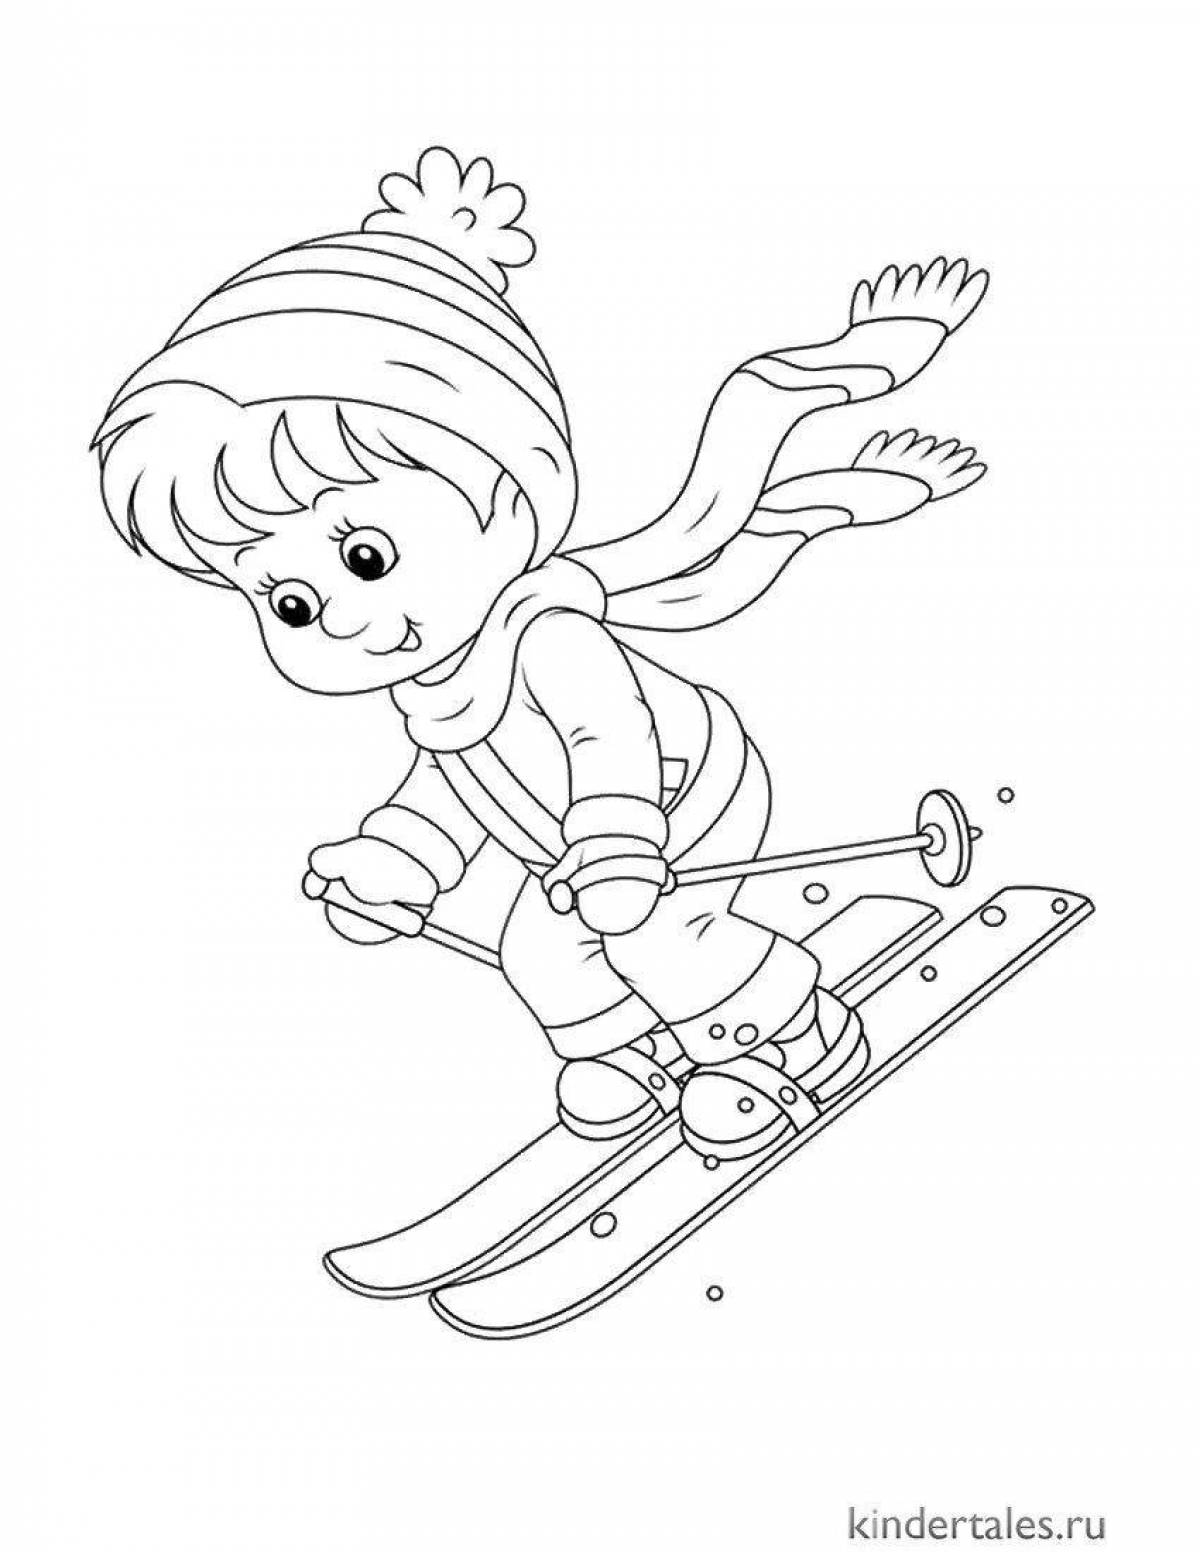 Яркие лыжи для детей 3-4 лет